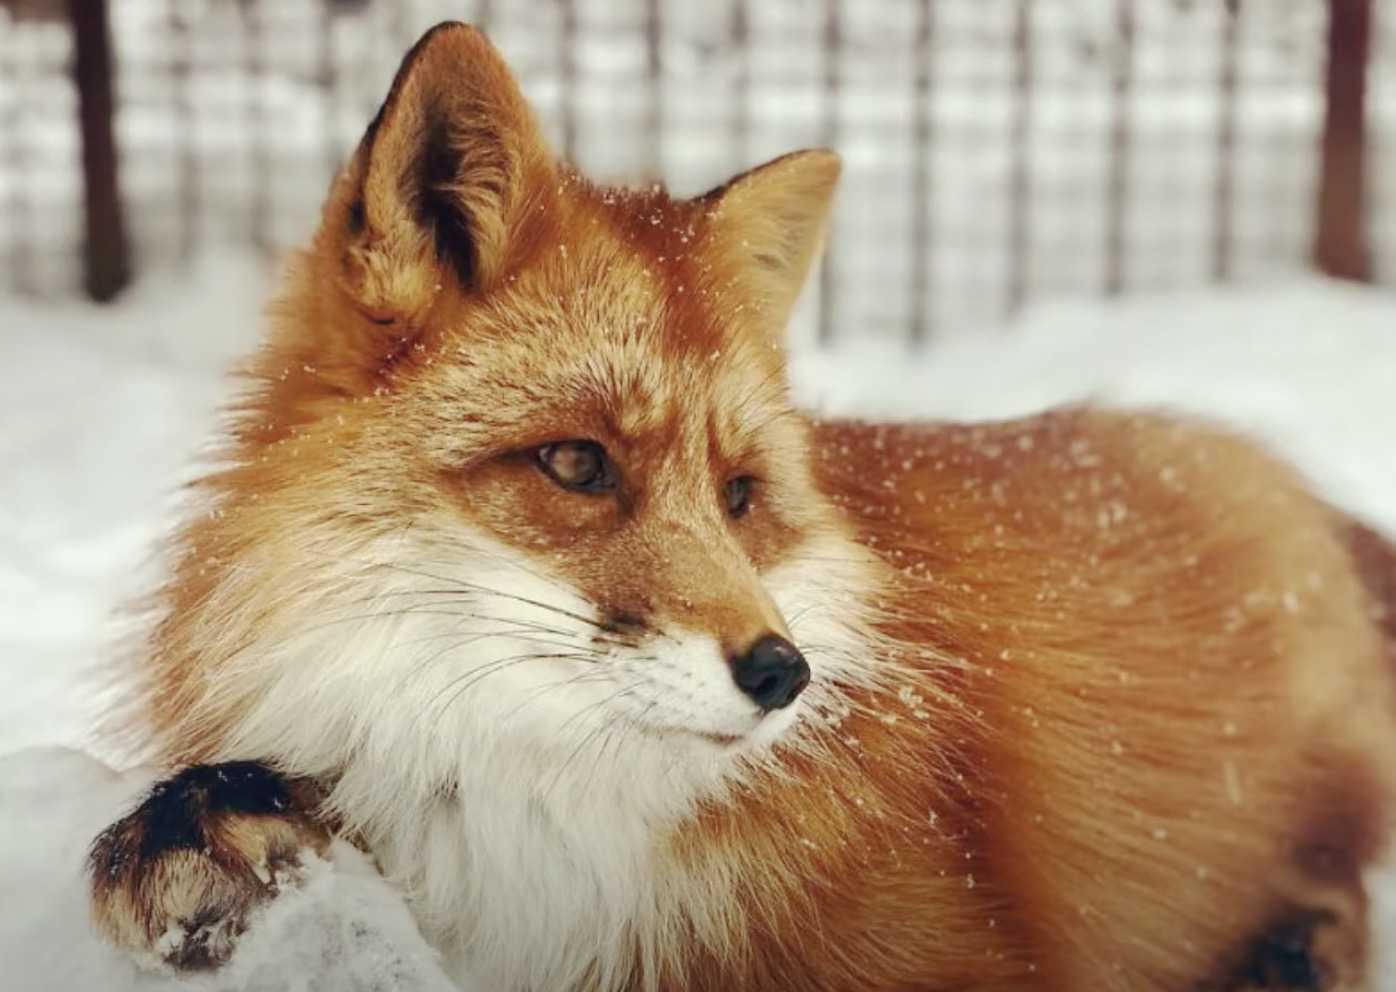 Mann rettet einen sterbenden Fuchs, später wurden sie beste Freunde (+15 Bilder)